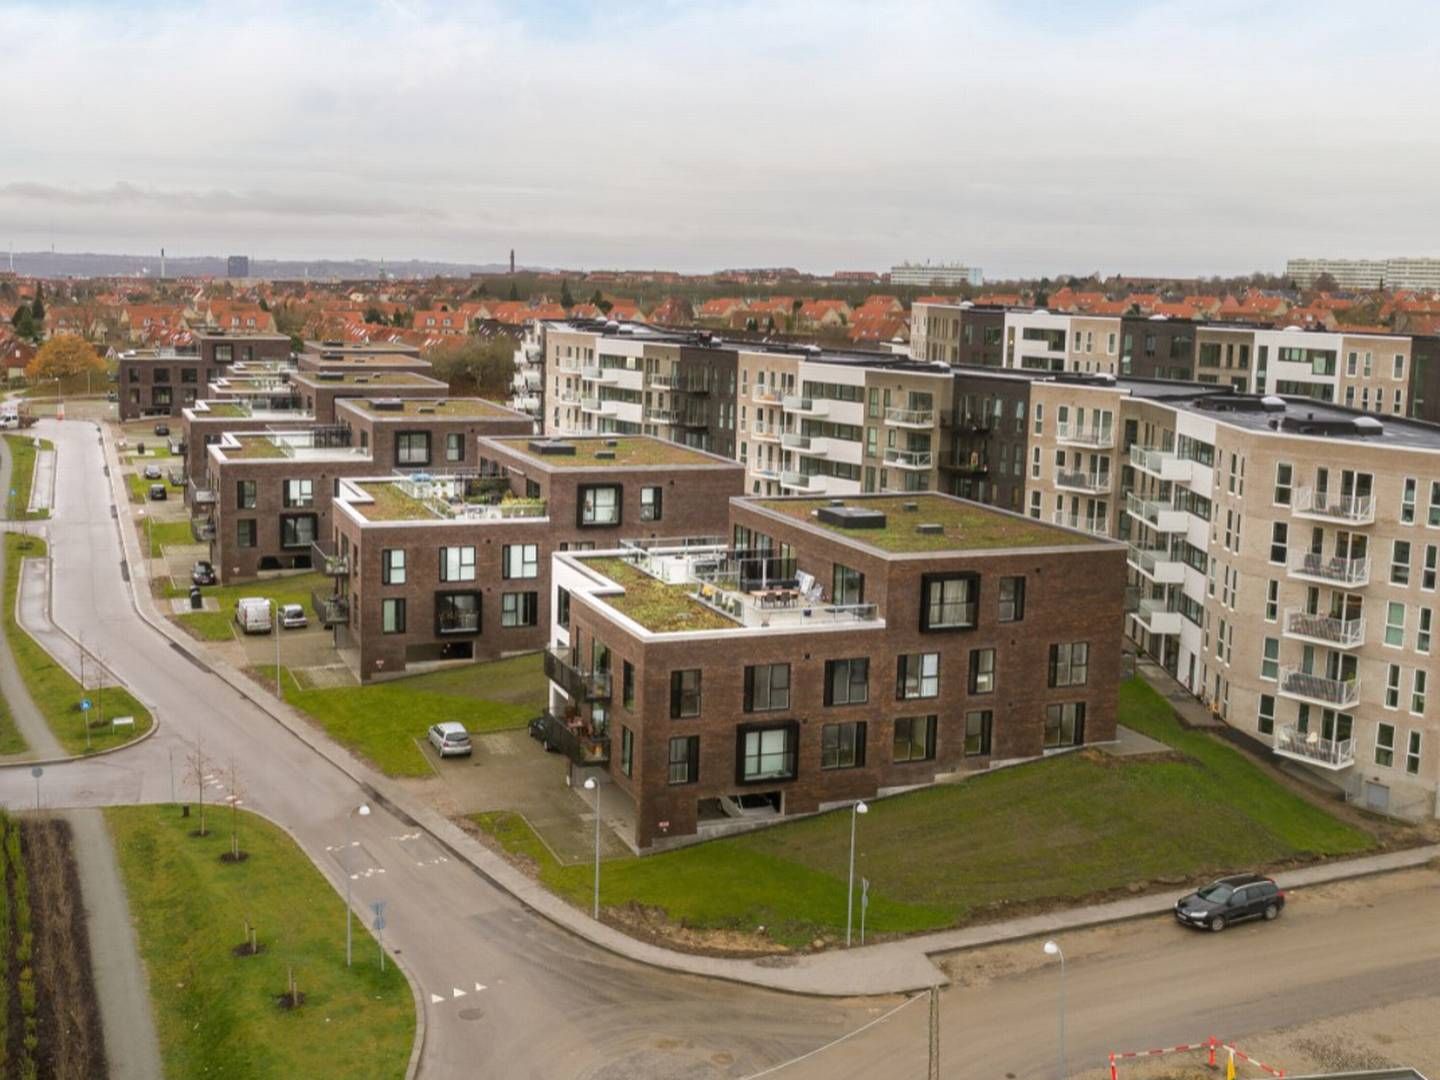 84 ud af 420 lejligheder, som AP Pension ejer i Risskov, er nu ejet af en fond med hjemsted i Tyskland. | Foto: PR / Peter Gramstrup / AP Pension